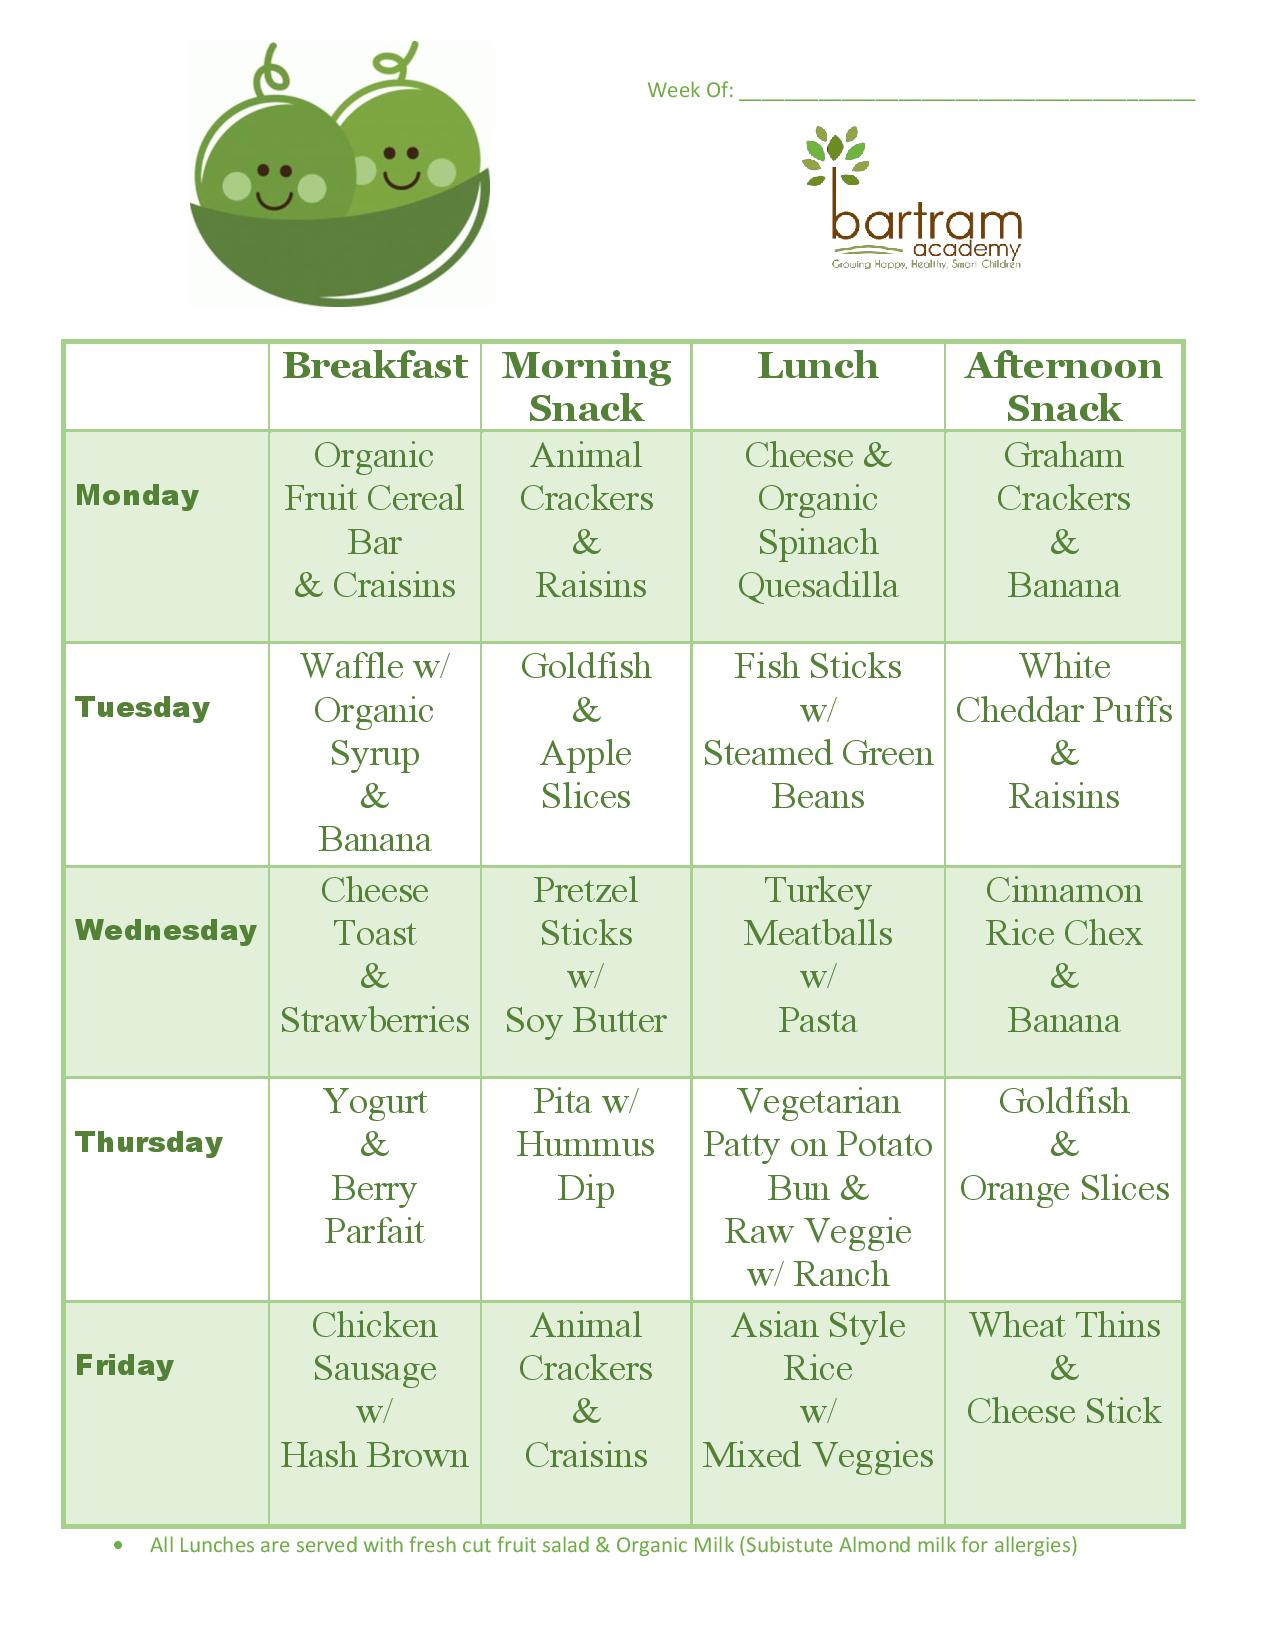 Week 4 menu for Bartram Academy